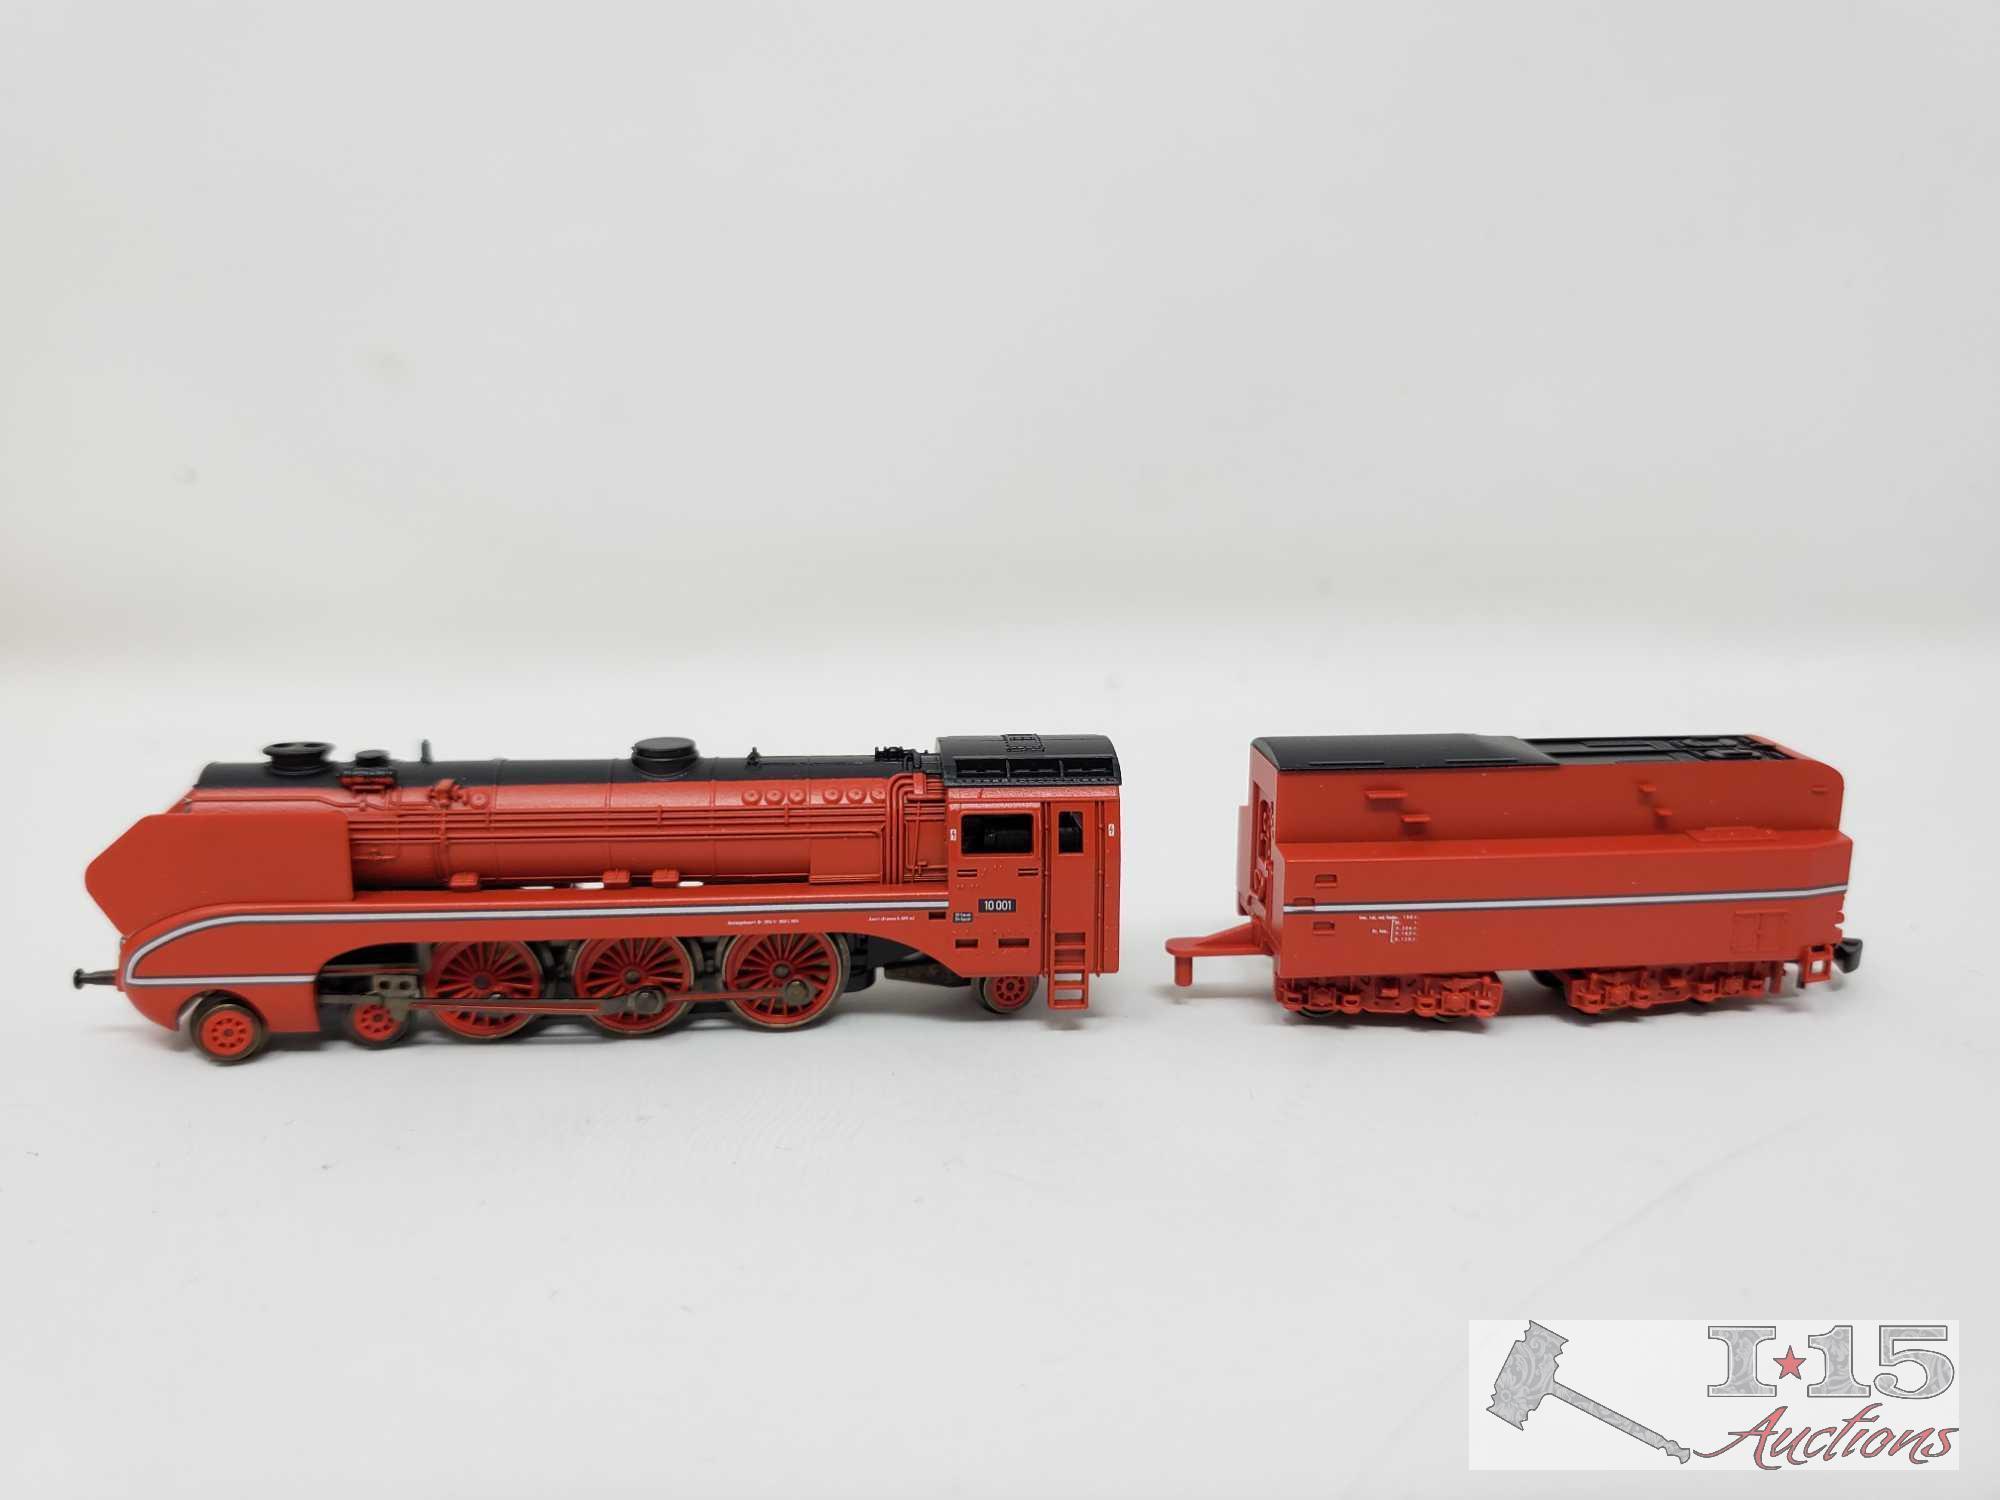 Marklin Mini-Club Z Scale Locomotive in Box - 88893